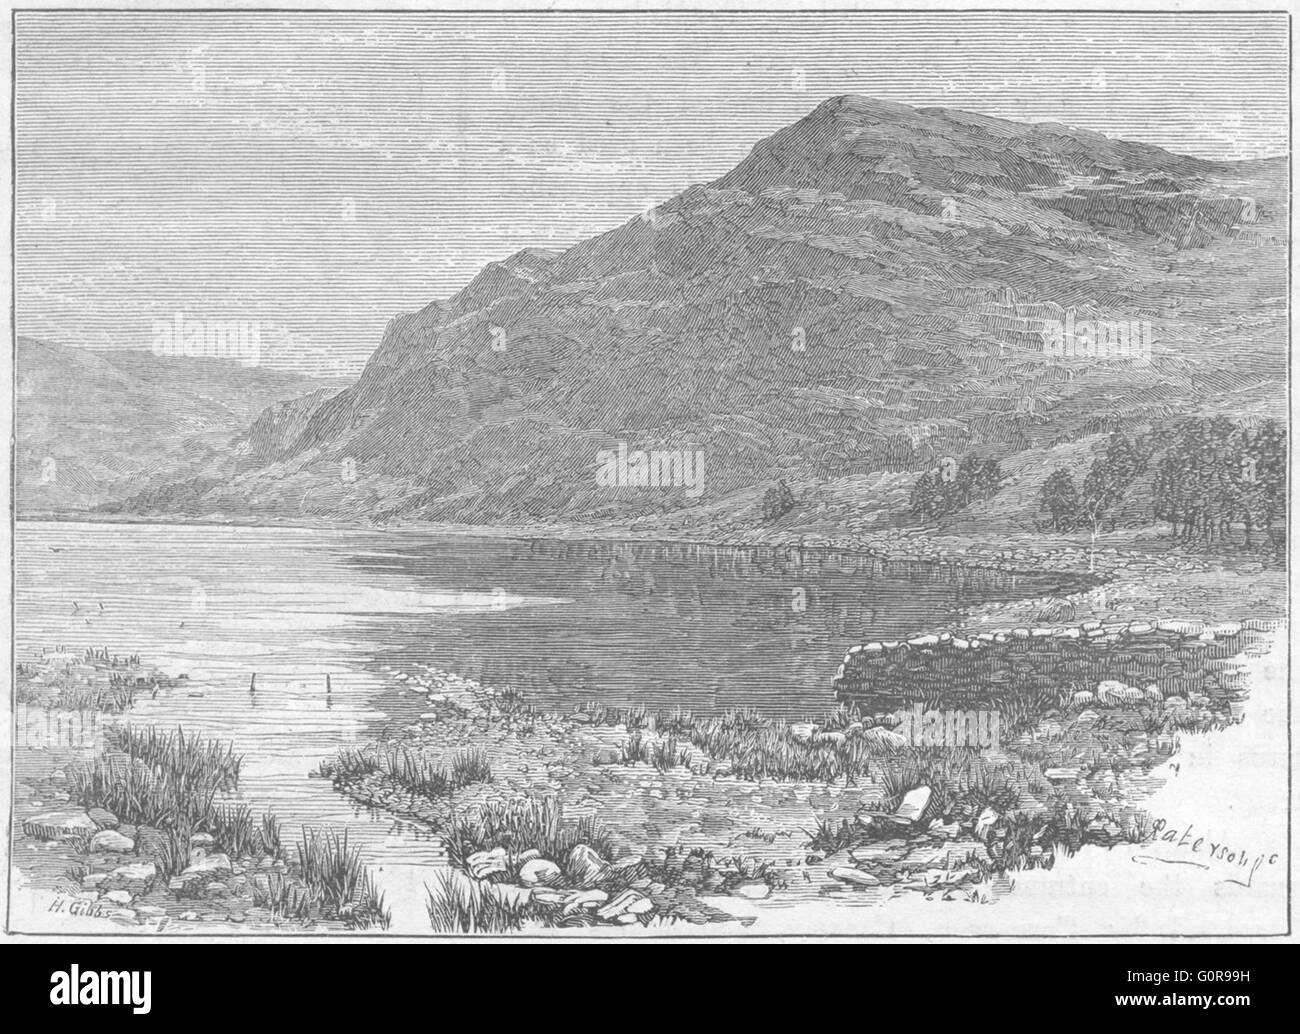 WALES: Cwm Buchan lake & Craig-y-Saith, antique print 1898 Stock Photo